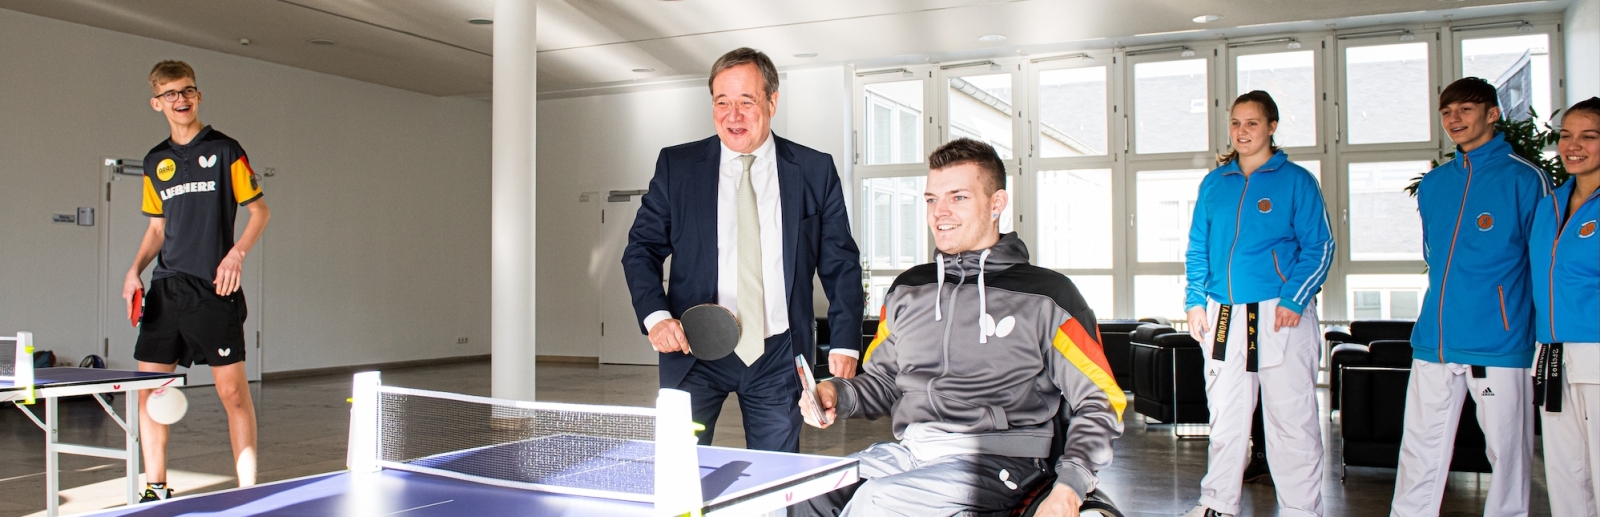 Ministerpräsident Armin Laschet mit Rollstuhlfahrer an einer Tischtennisplatte im Düsseldorfer Landeshaus NRW.